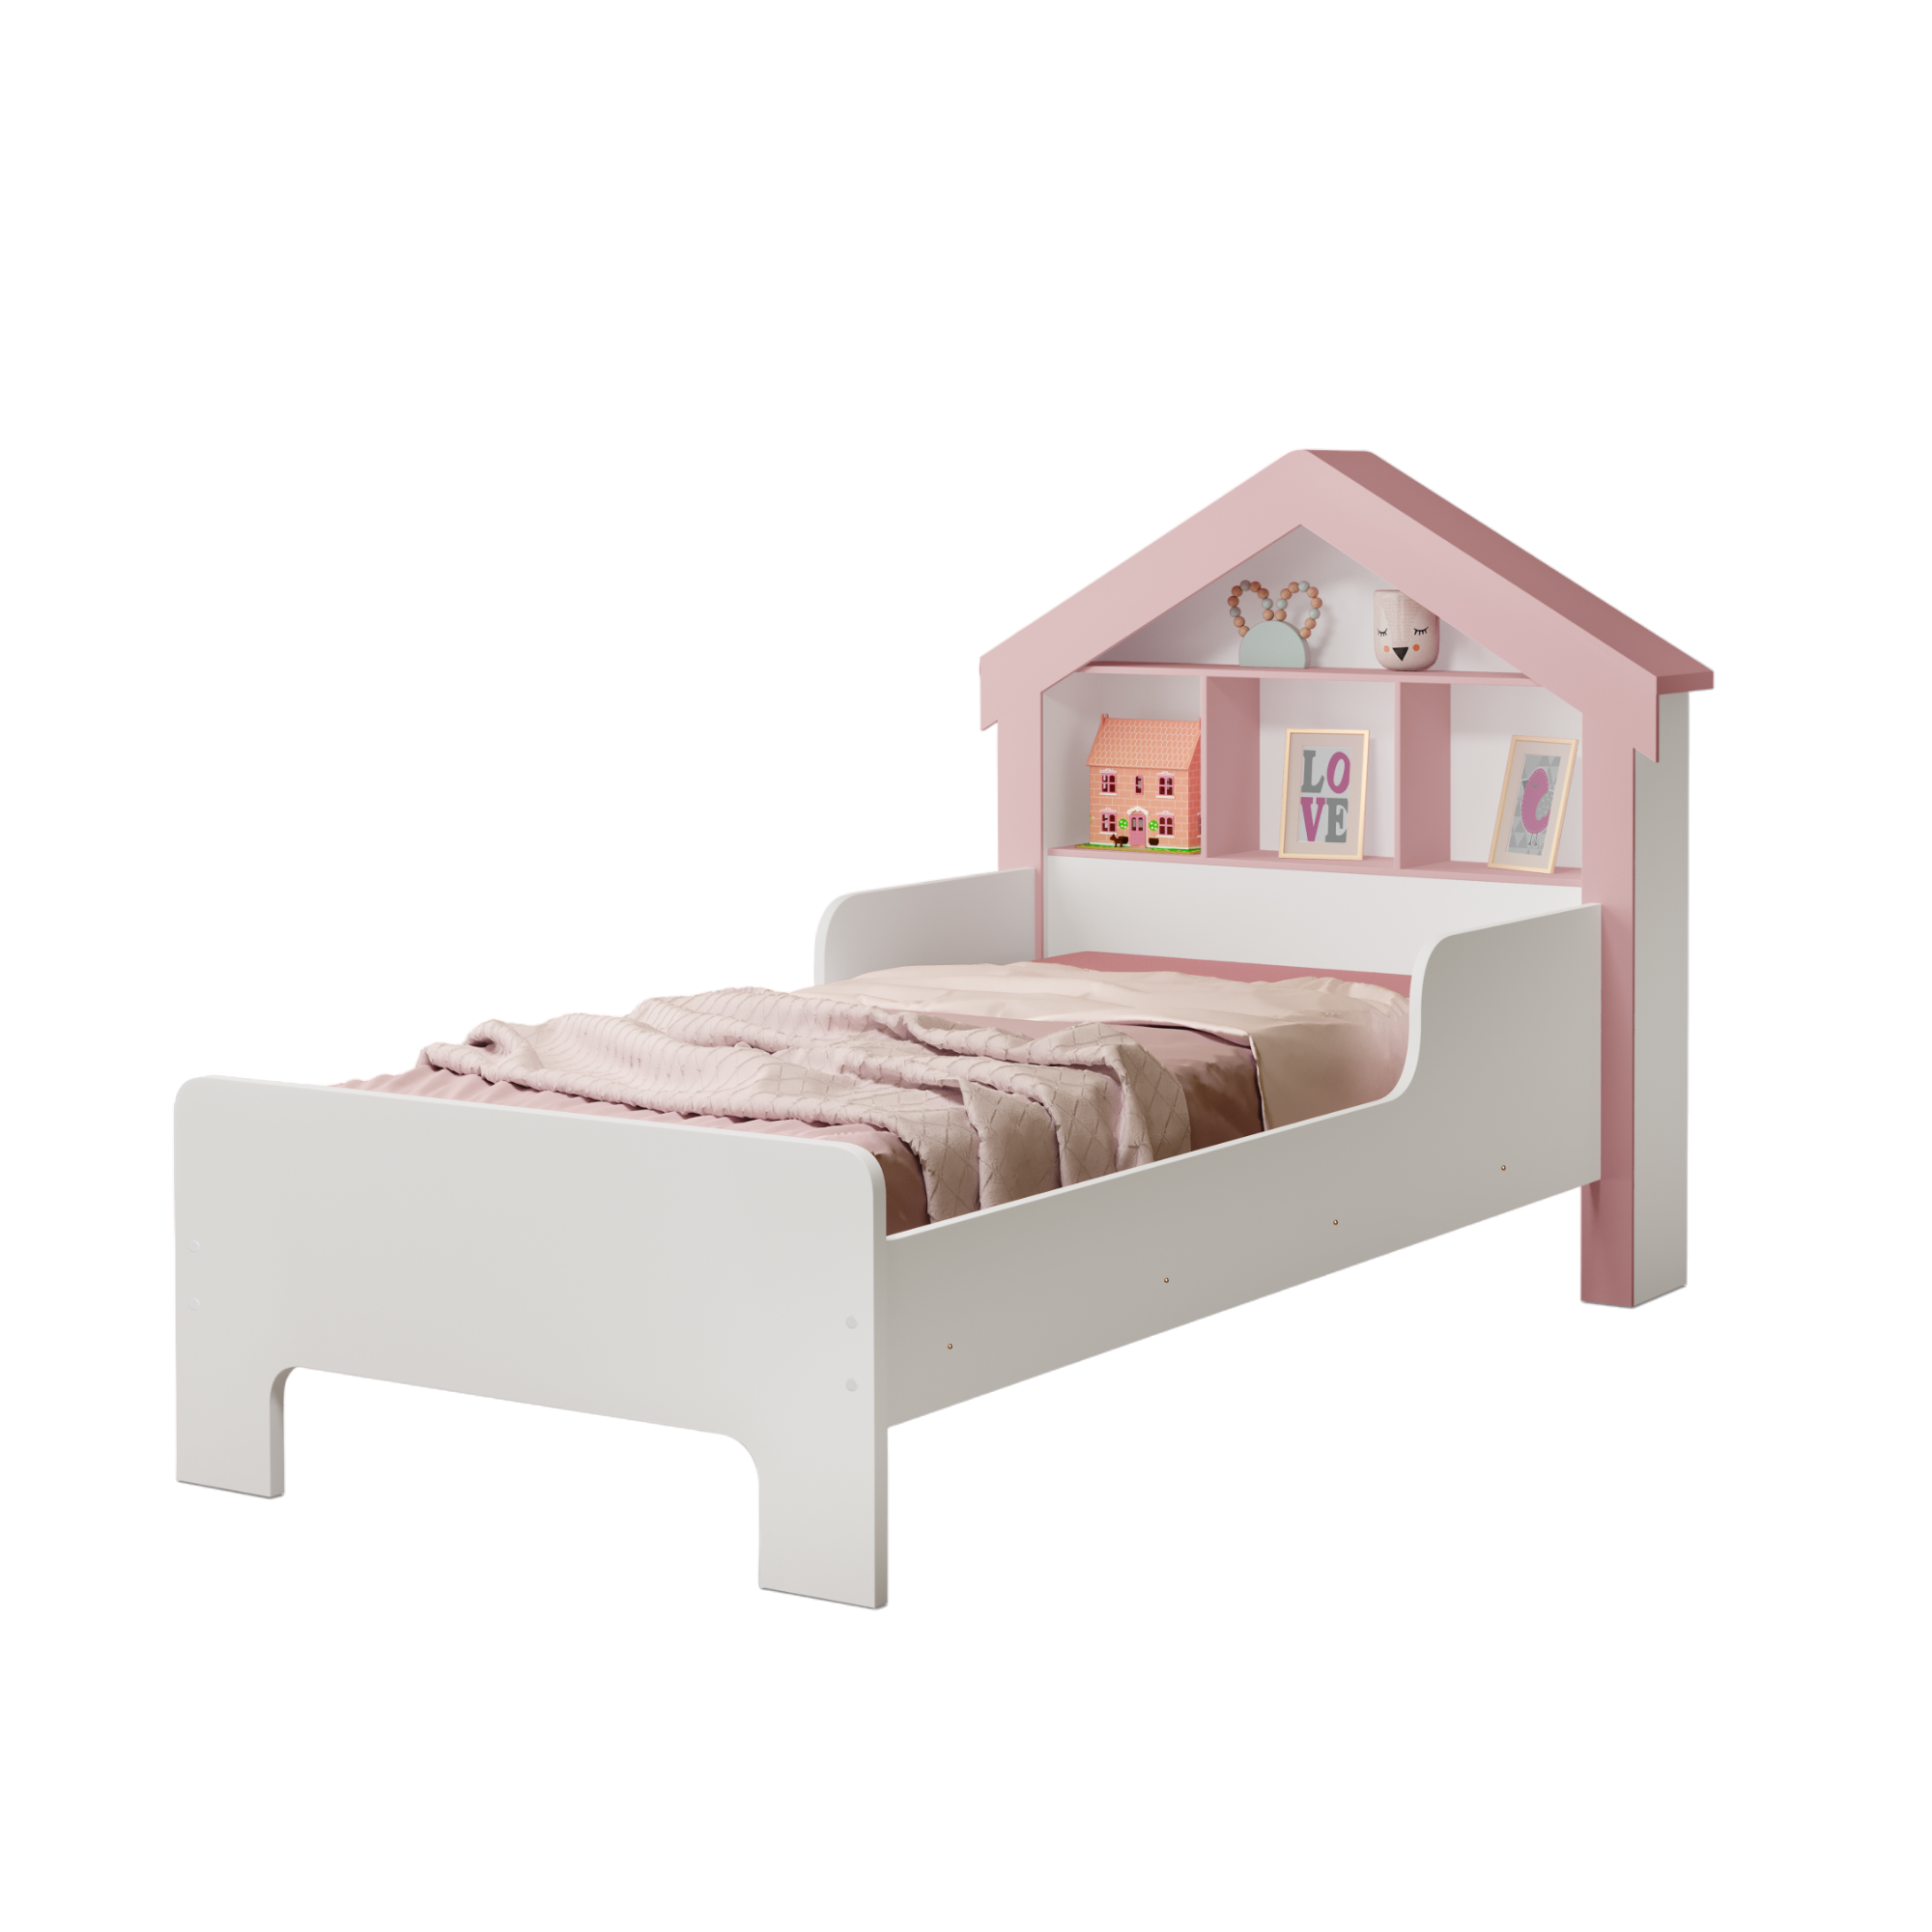 Cama Infantil Modelo Casinha Solteiro Cristal Branca/rosa - 3